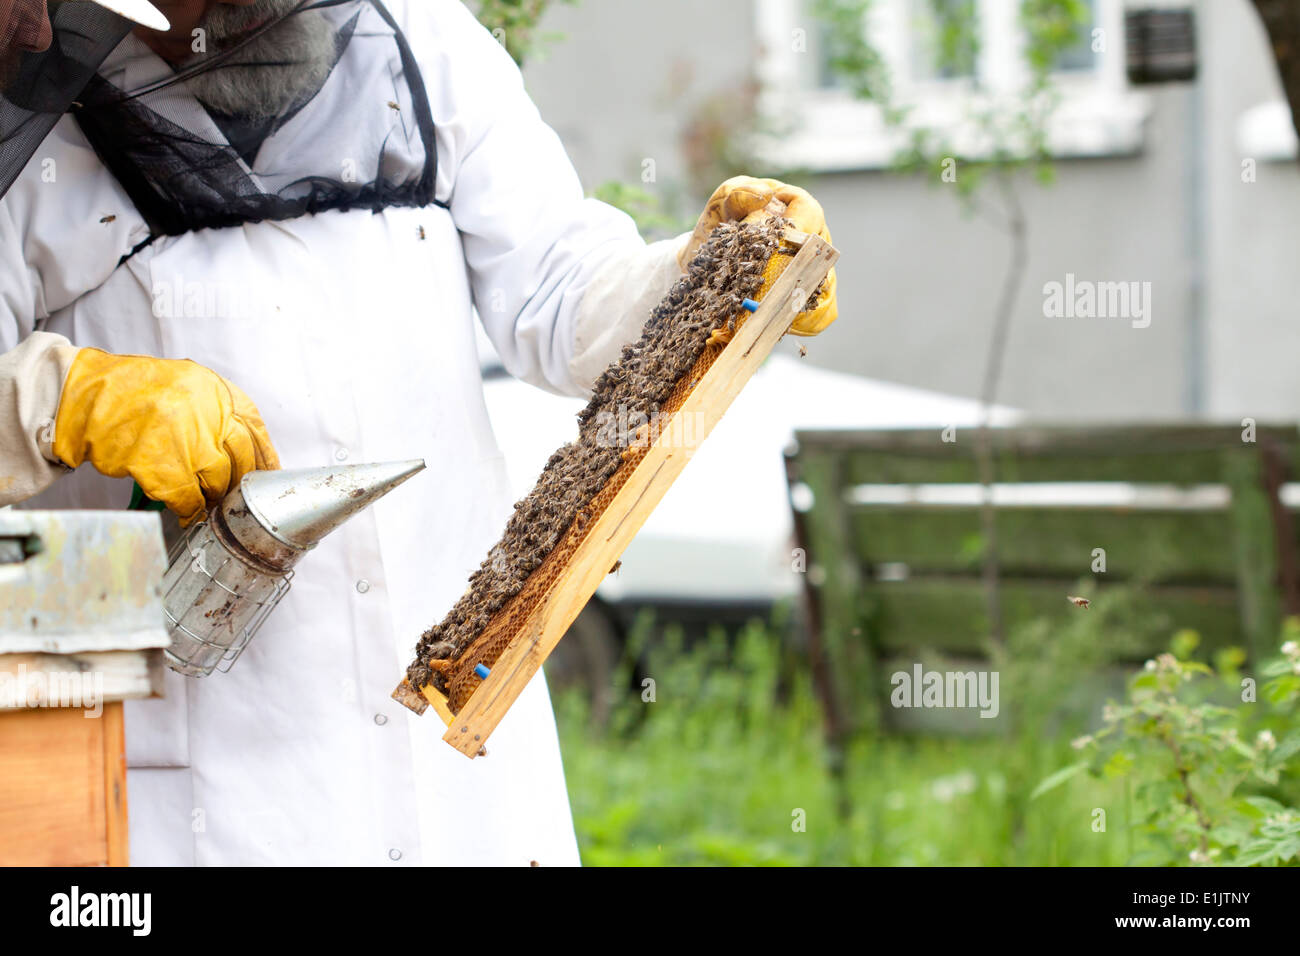 Apiculteur apiculteur de travail - Organiser un cadre de miel Banque D'Images